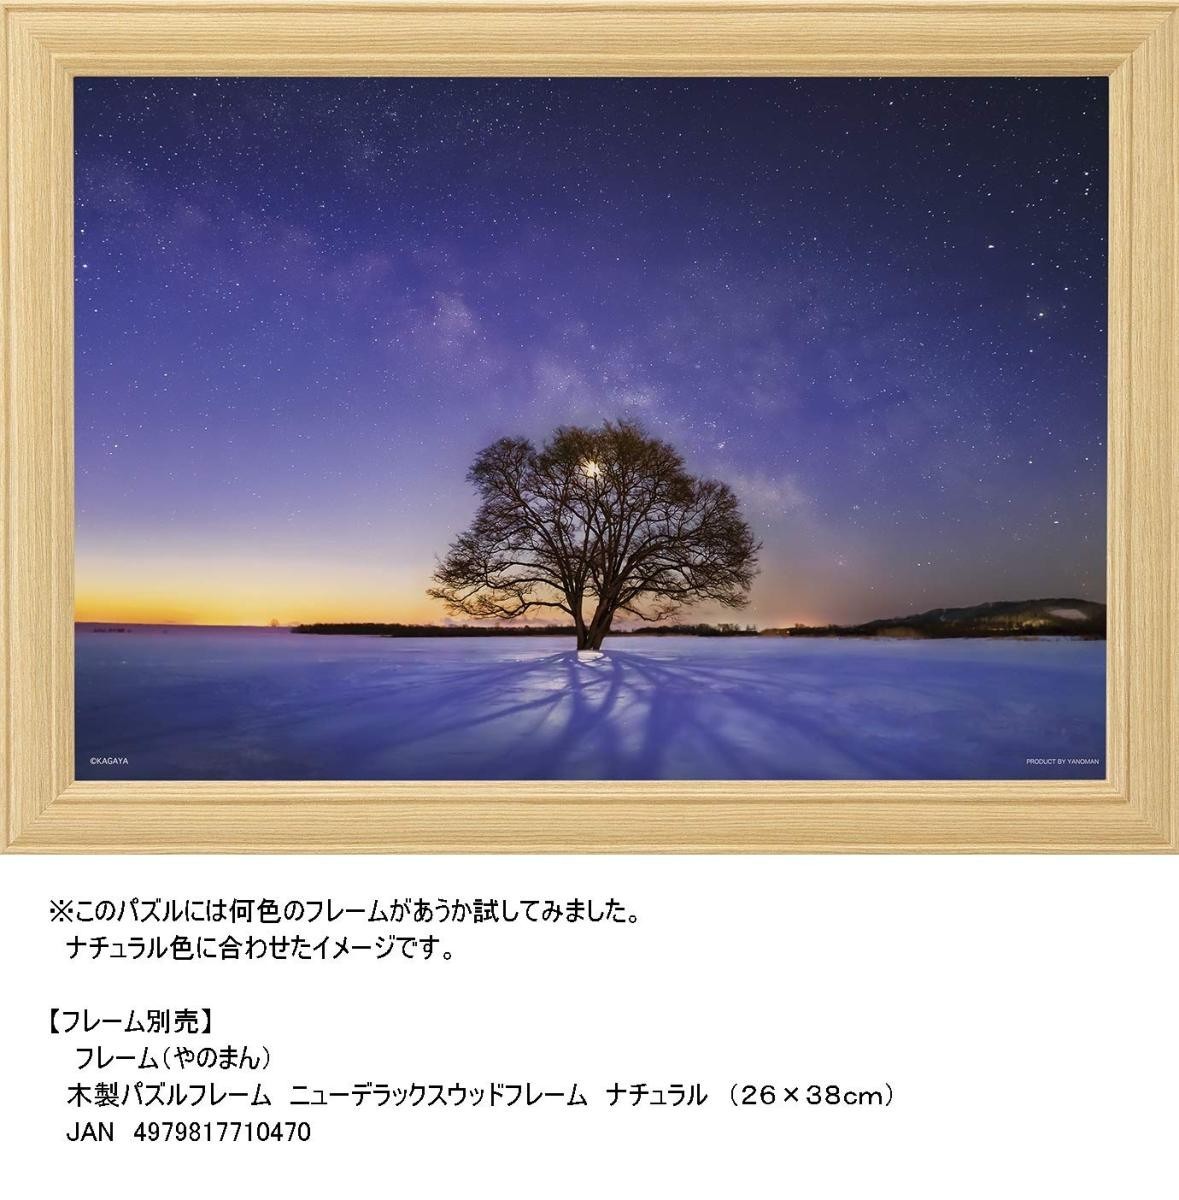 ジグソーパズル 300ピース 光るパズル KAGAYA ハルニレの木と天の川 (北海道）26x38cm 03-906　送料無料 新品